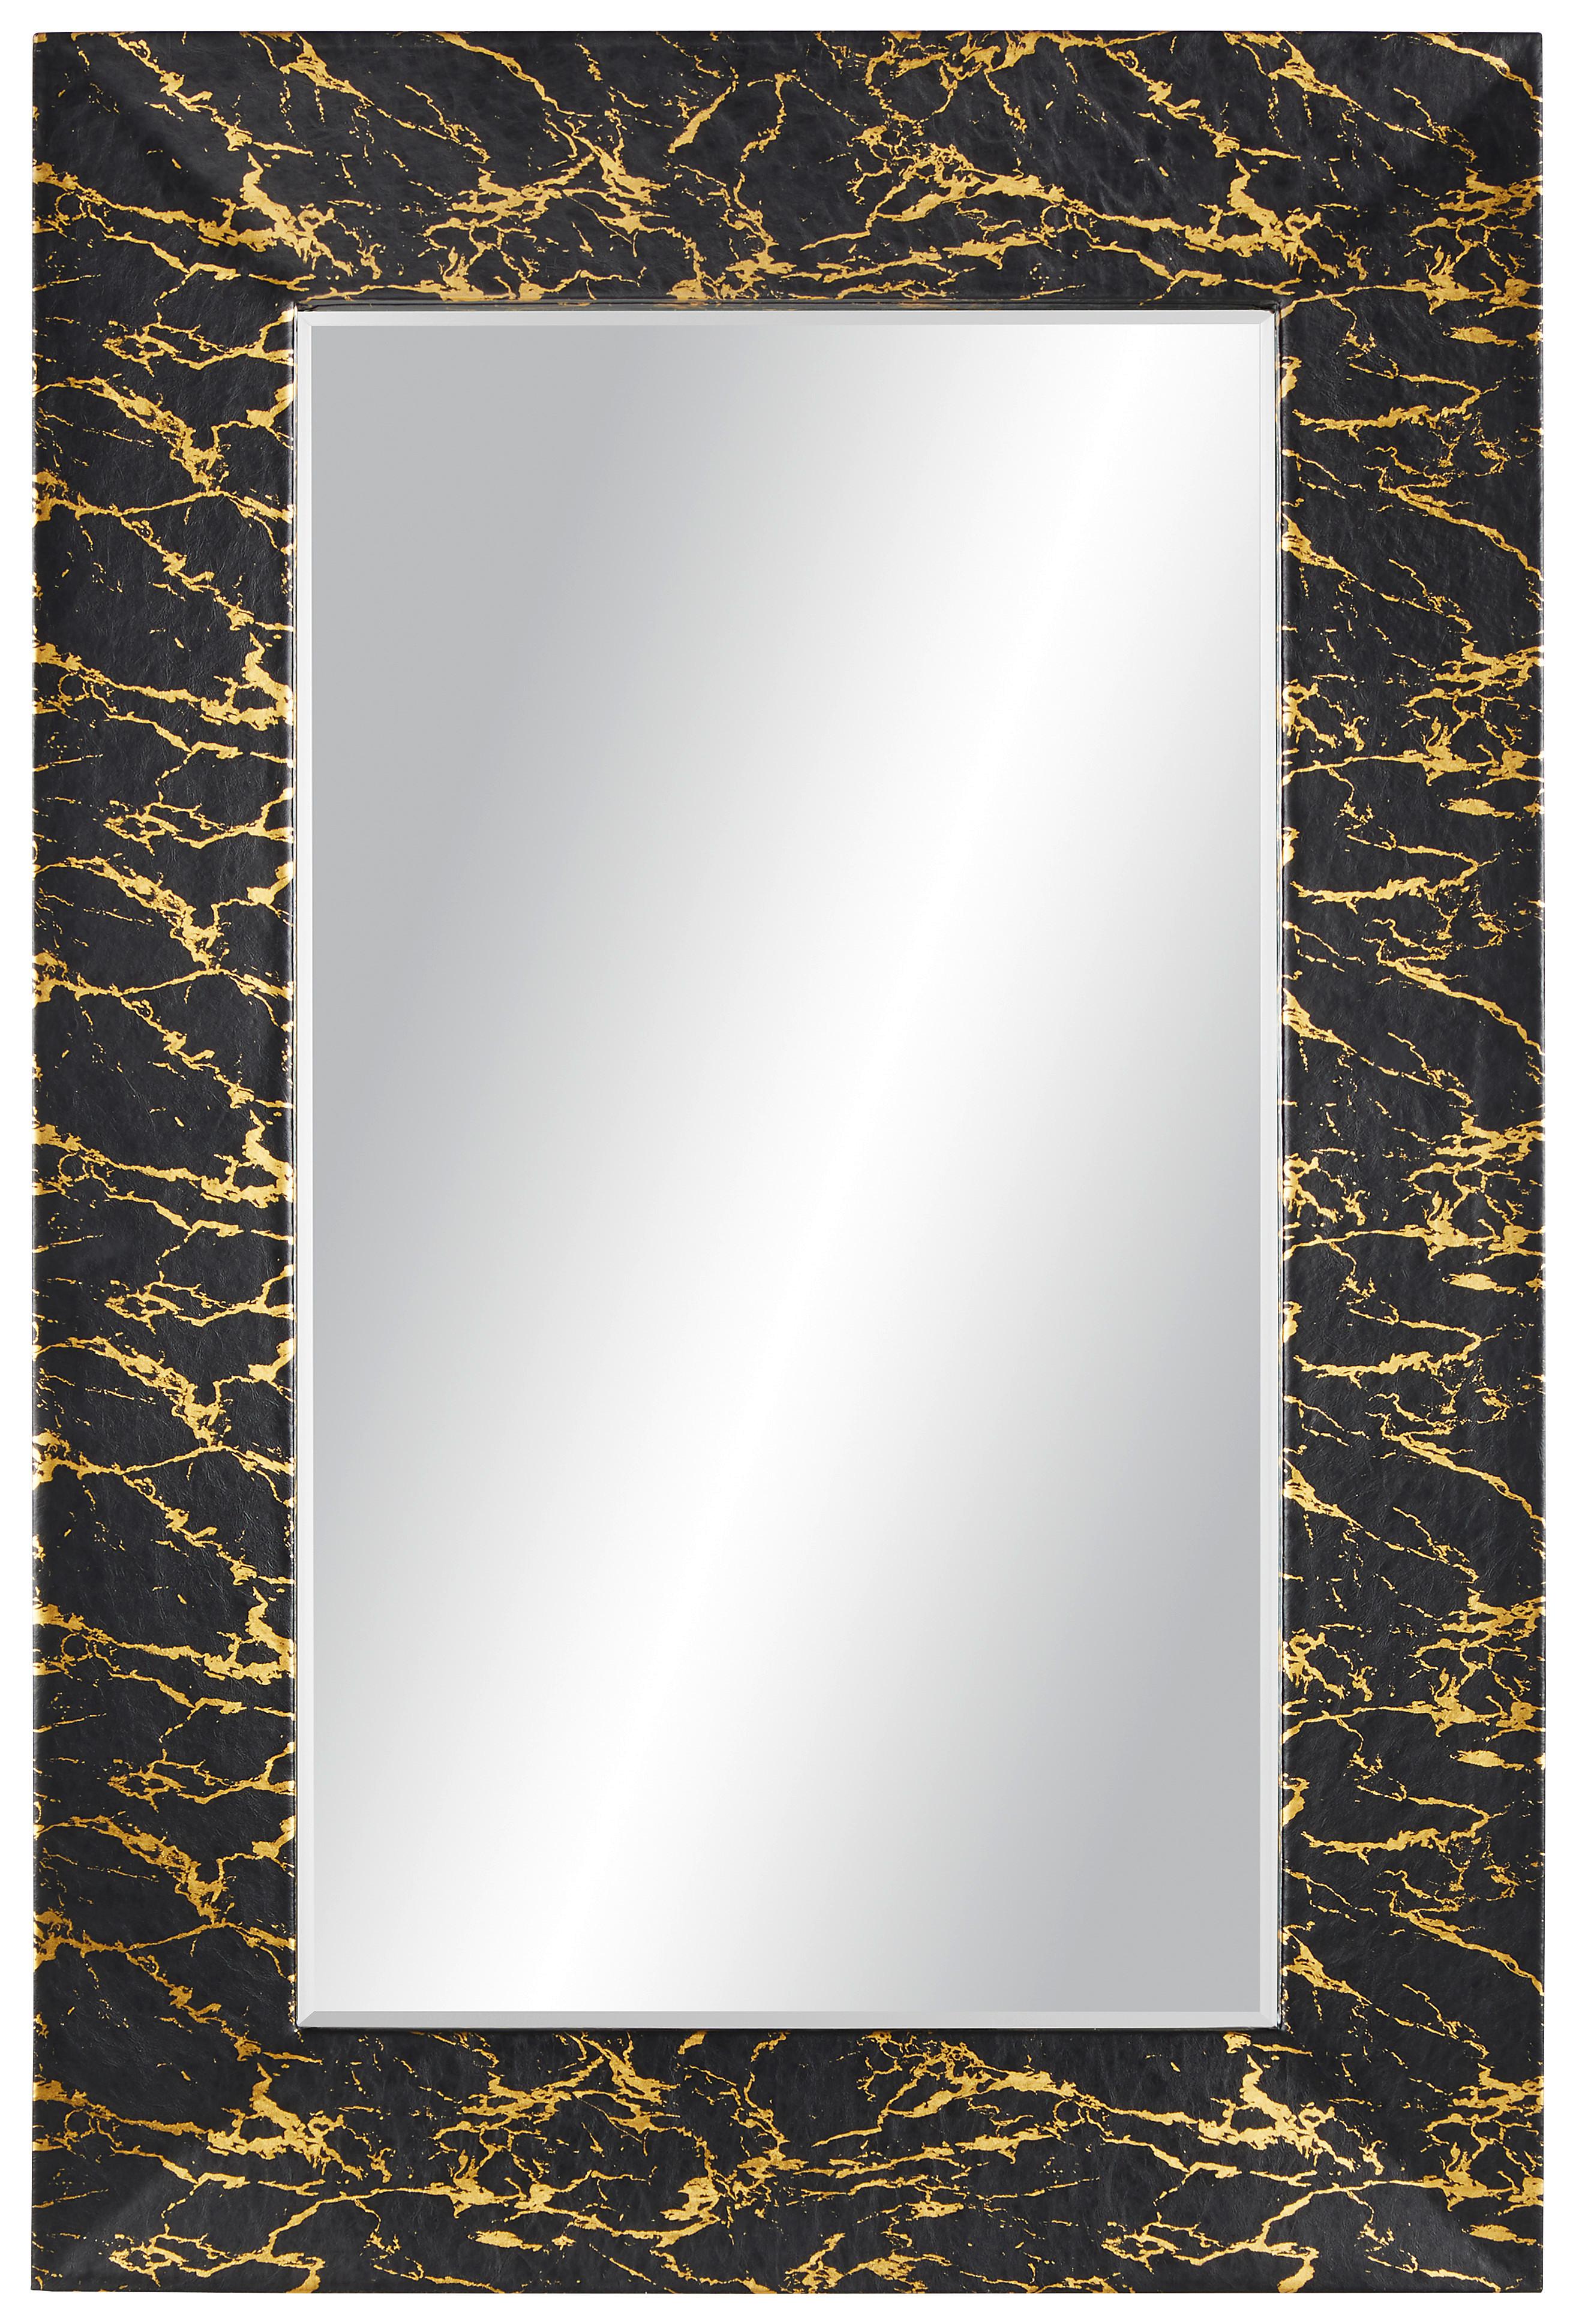 Stensko Ogledalo Glamour - črna/zlata, Moderno, steklo/leseni material (80/120/5cm) - Modern Living